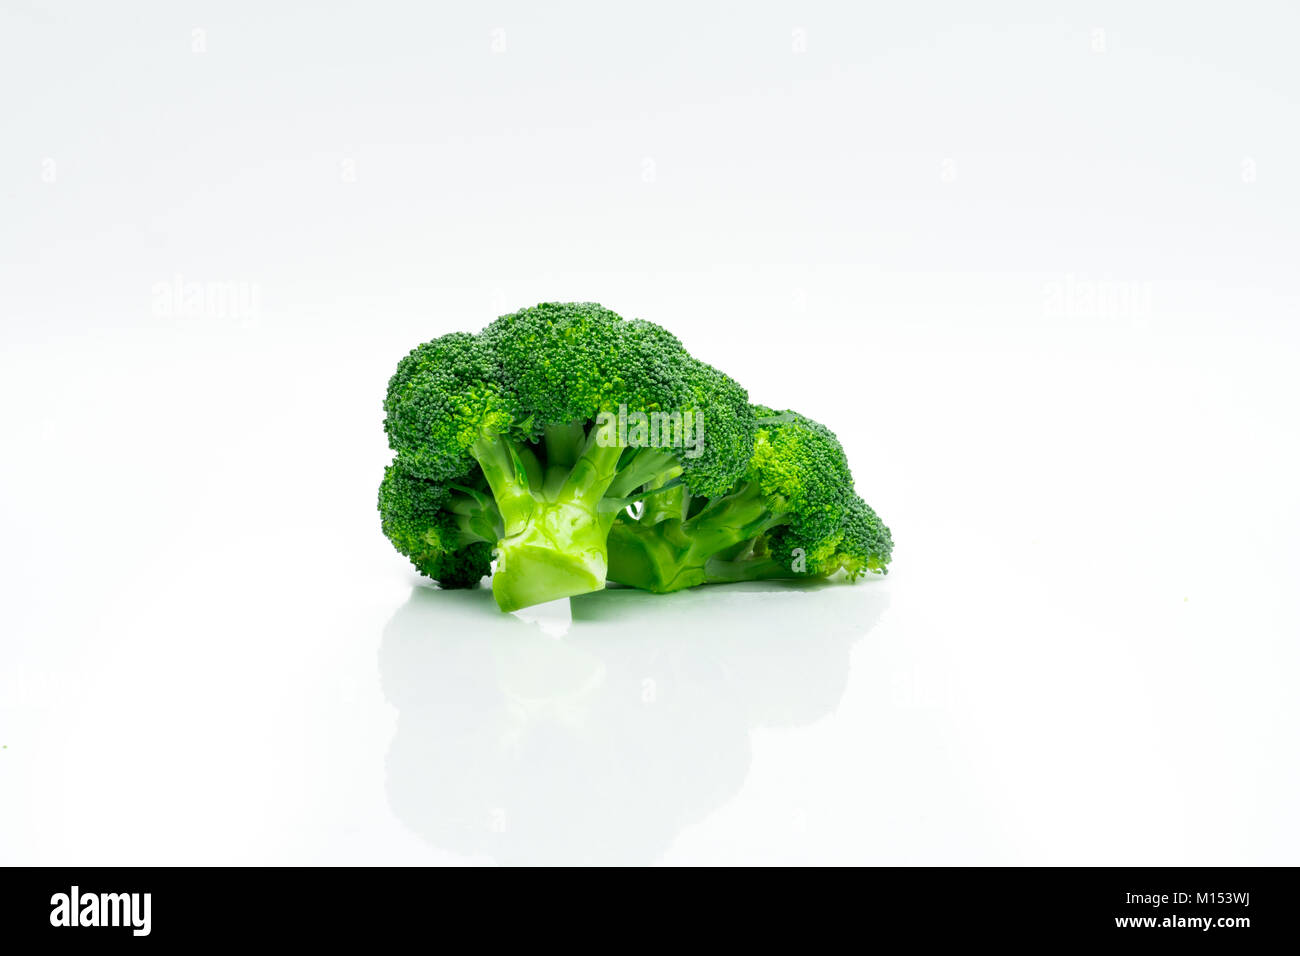 Grüne Brokkoli (Brassica oleracea). Gemüse natürliche Quelle von Beta-Carotin, Vitamin C, Vitamin K, Glasfaser Essen, Folsäure. Frischen Brokkoli Kohl isolat Stockfoto